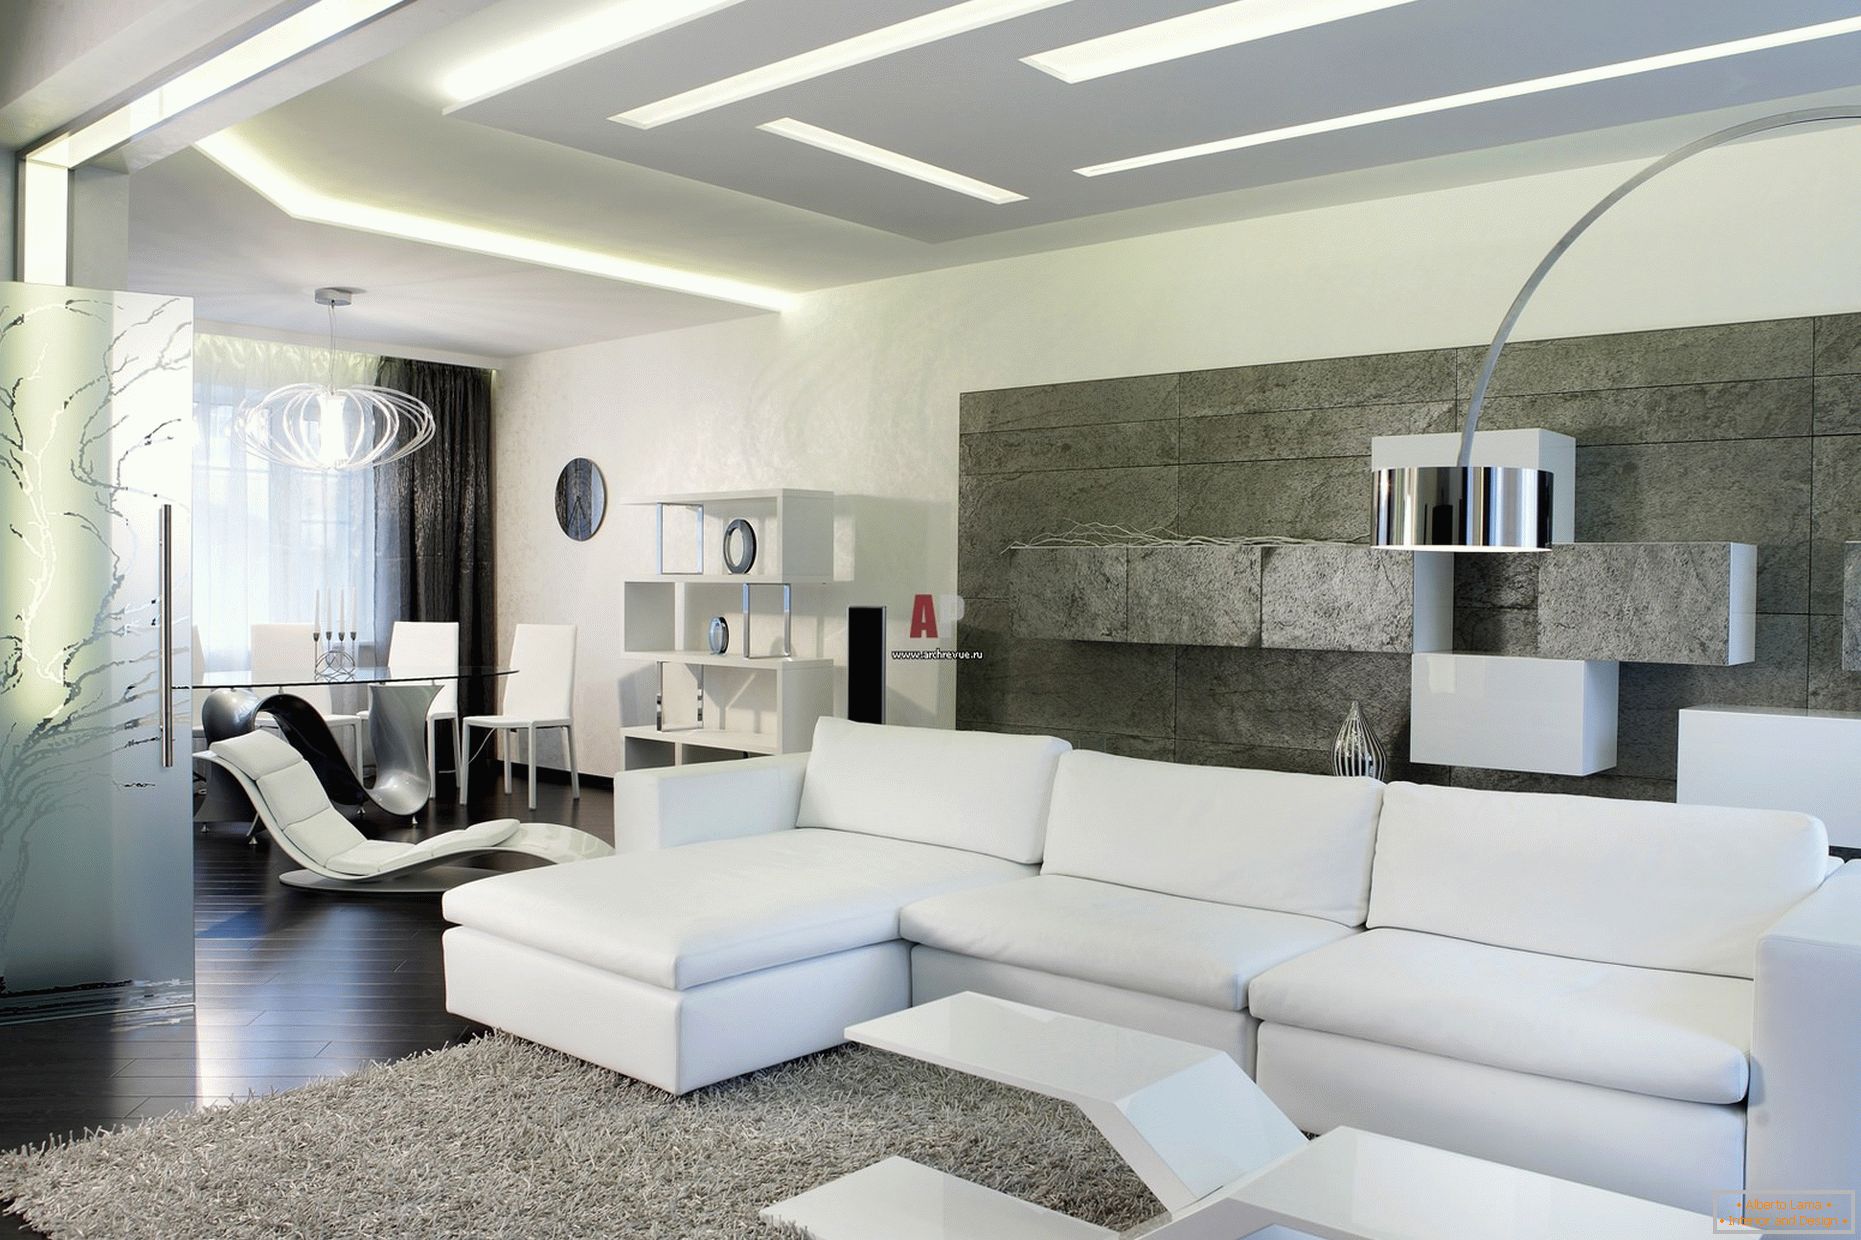 A szoba vendégeinek fehér belseje minimalista stílusban figyelemre méltó a modern, merész dizájn és a csúcstechnológia jegyében.